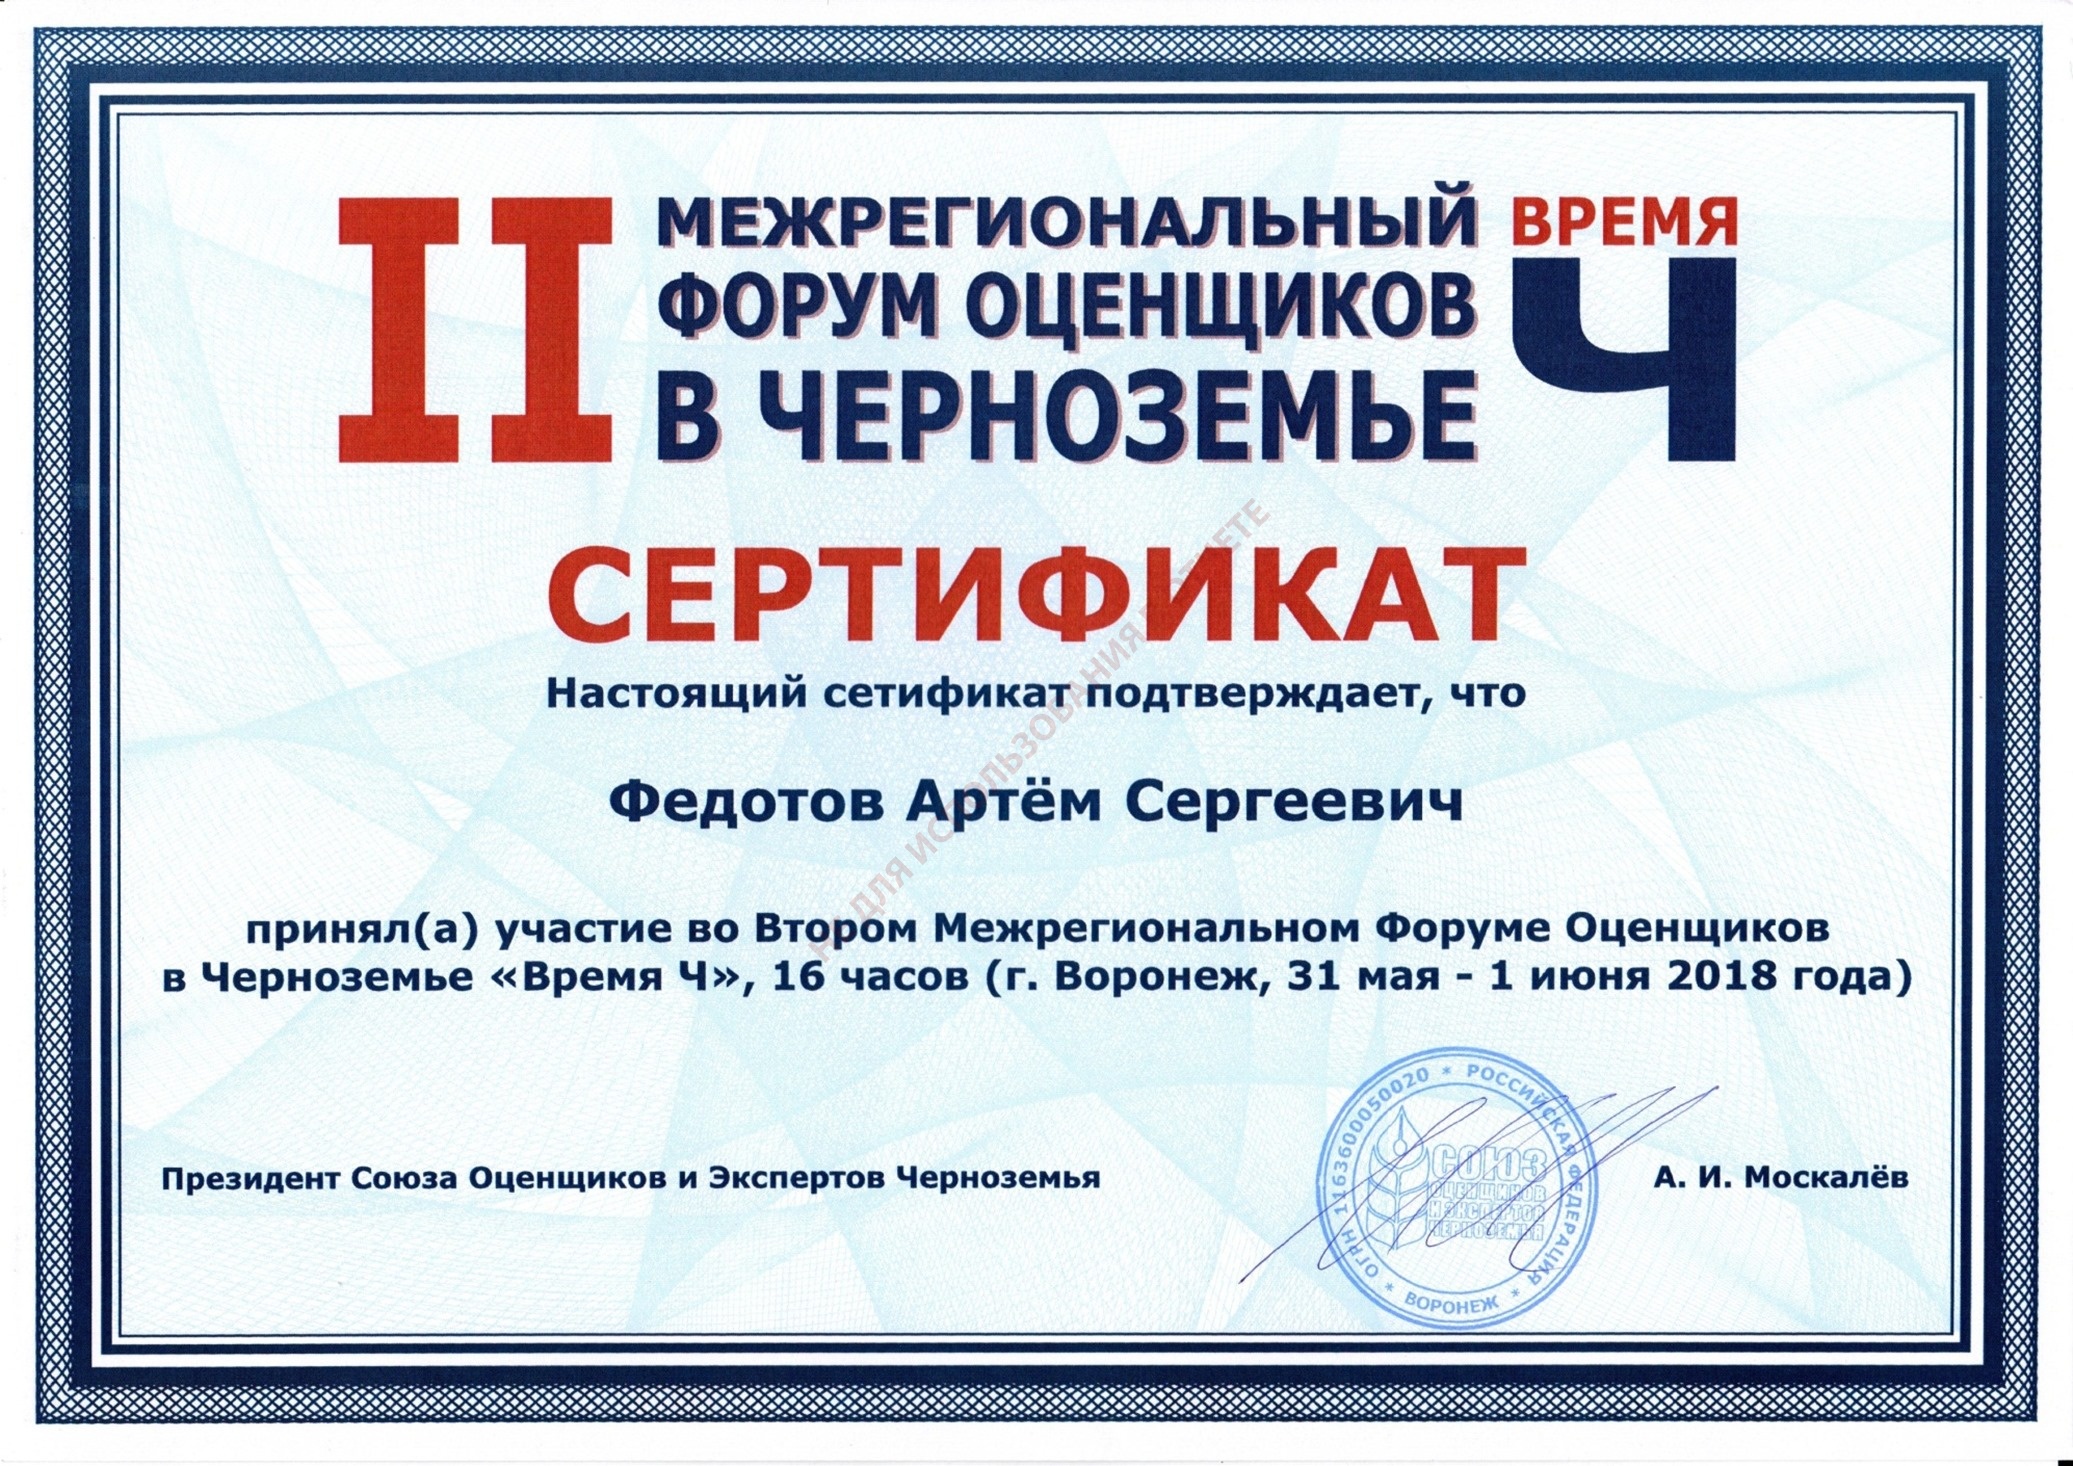 Сертификат о участии во Втором Форуме Оценщиков